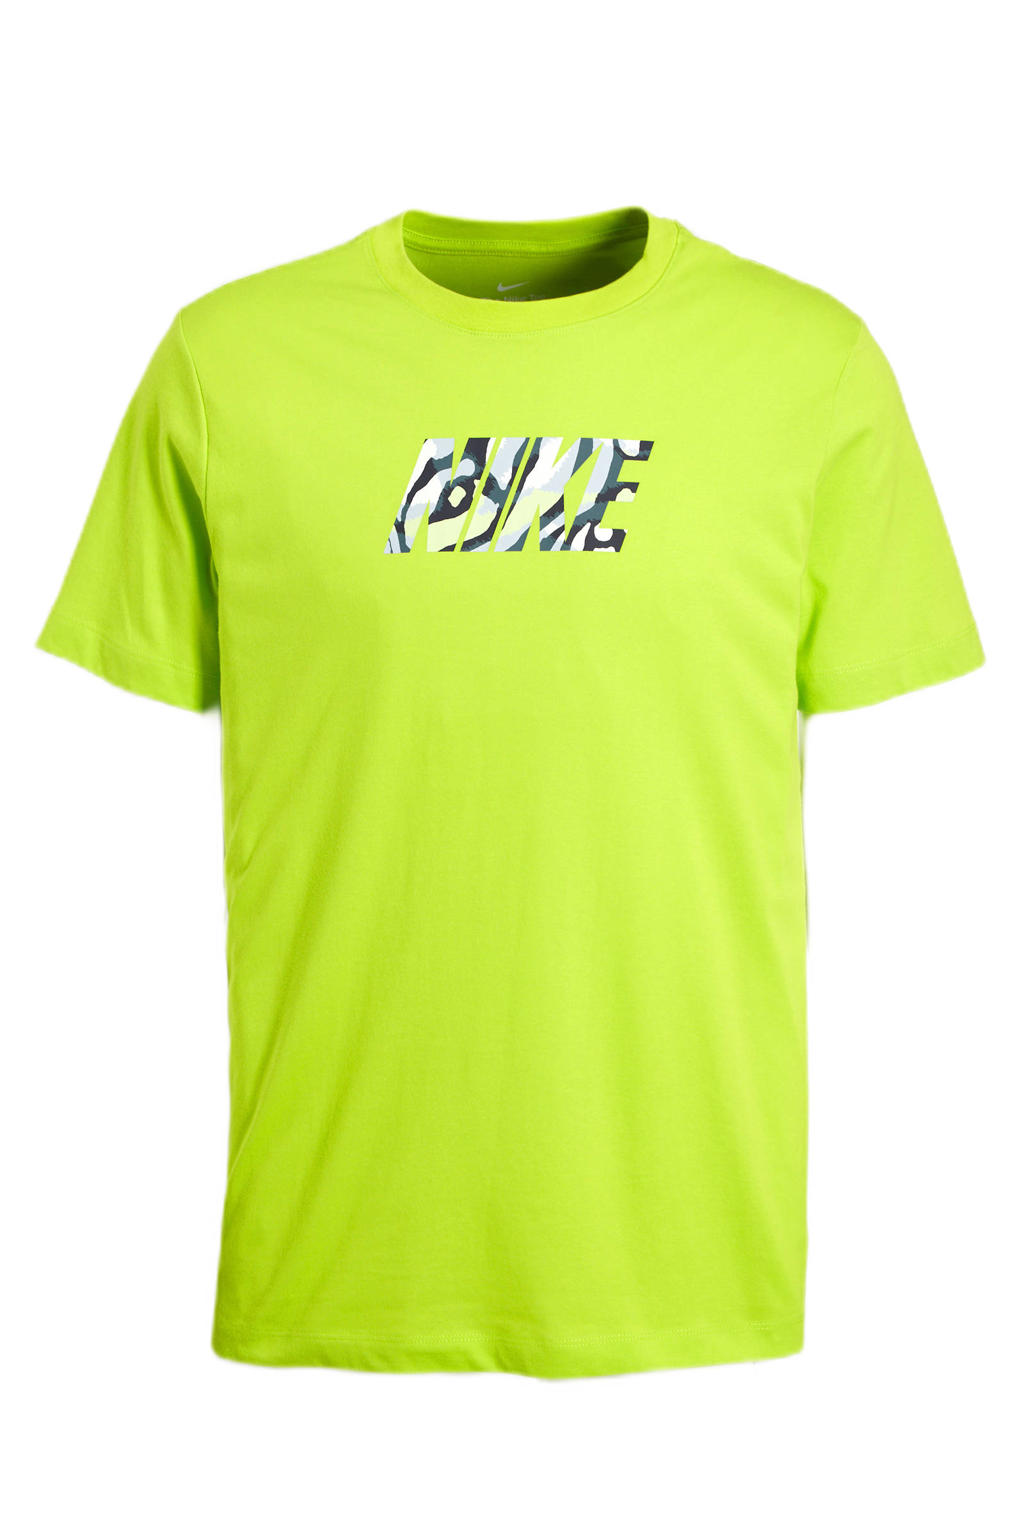 Nike   sport T-shirt limegroen